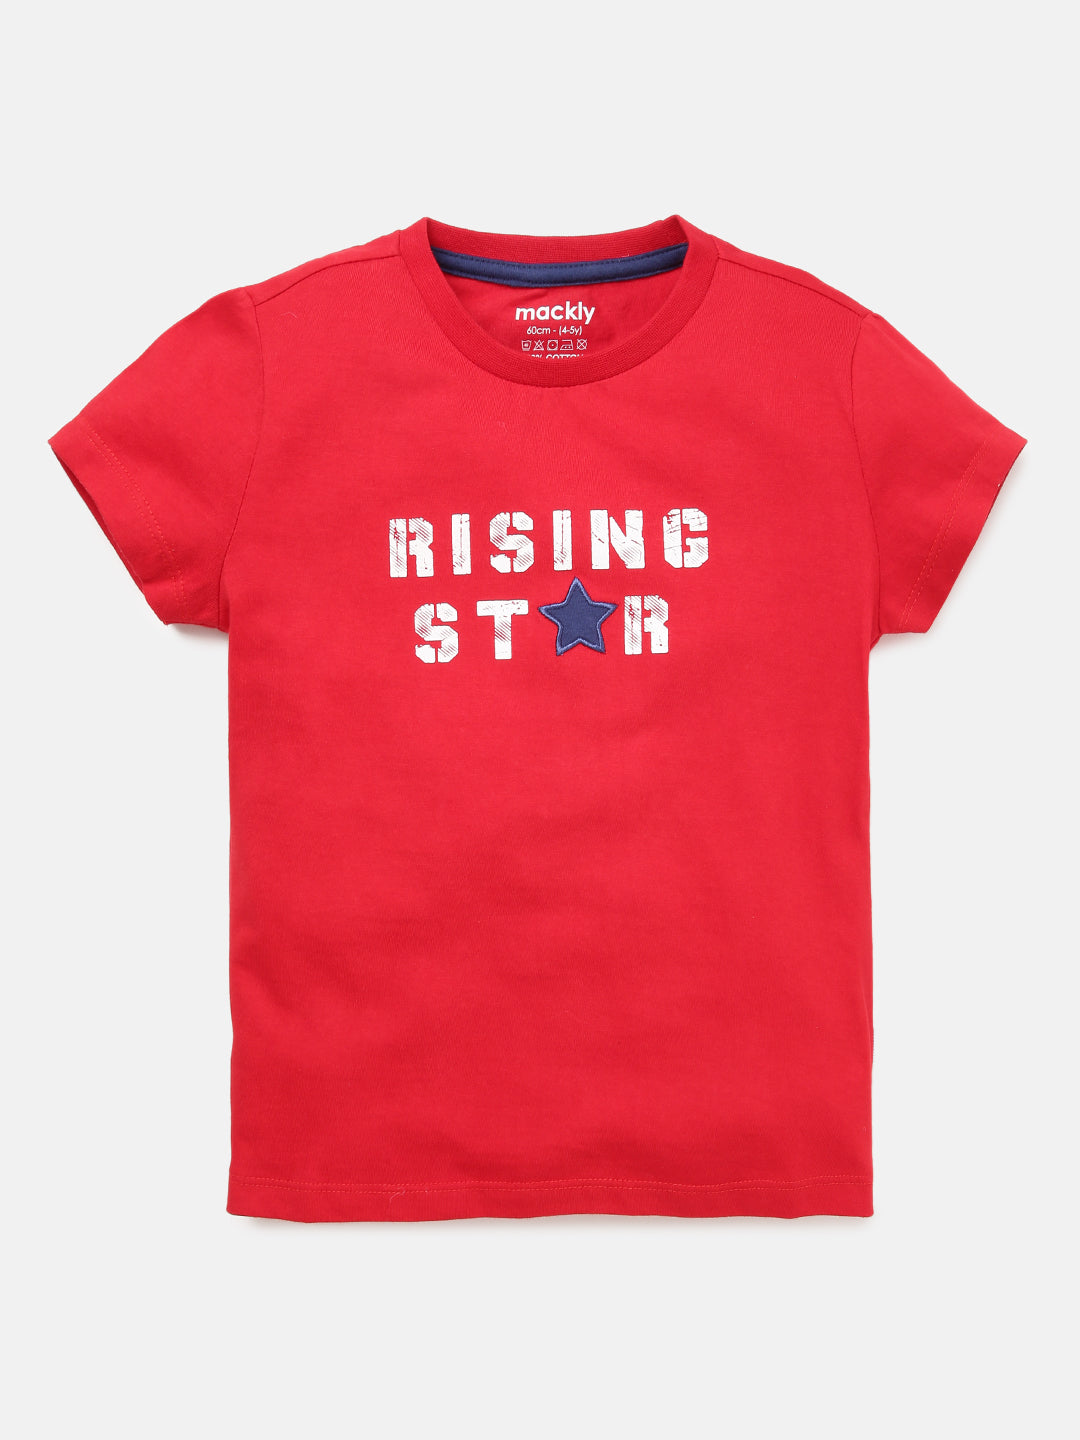 Raising Star Red